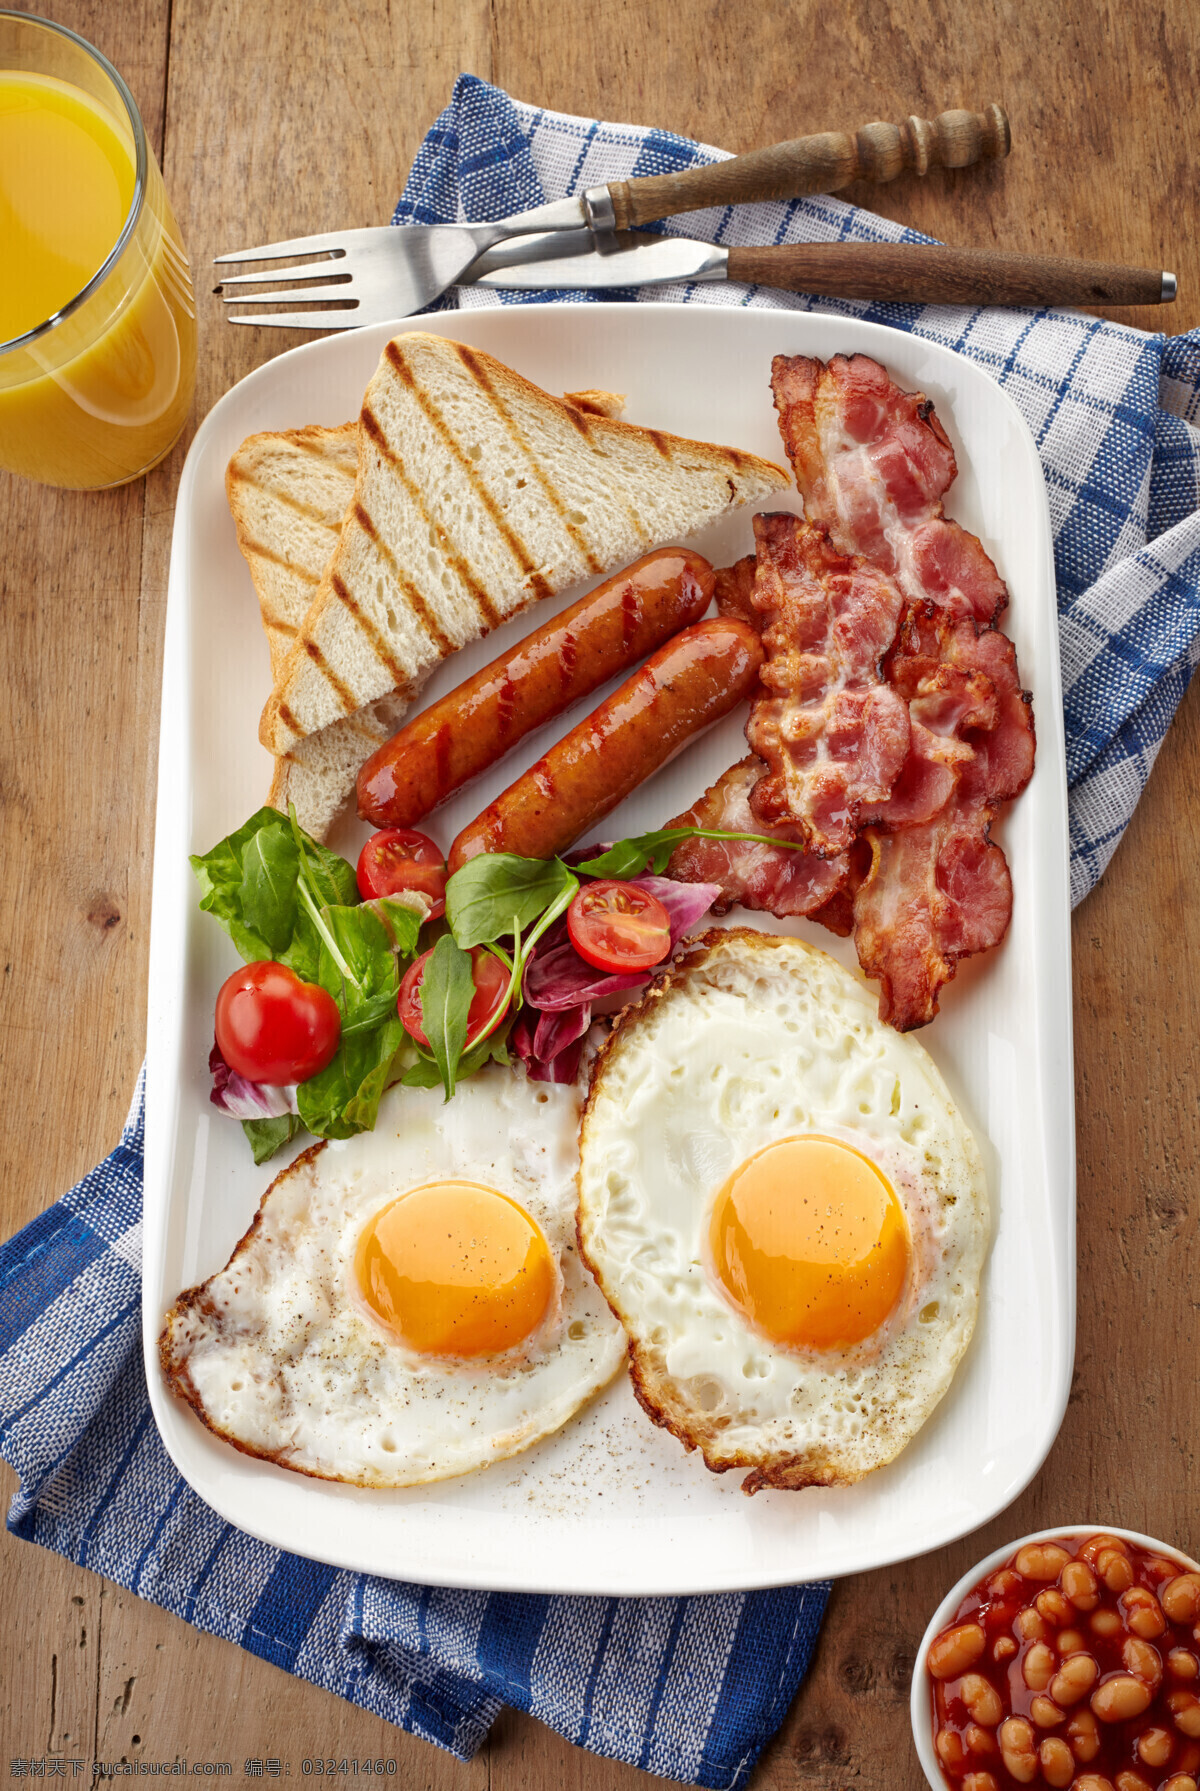 西式早餐 英式早餐 西餐早餐 营养早餐 早餐 营养均衡 煎蛋 香肠 培根 餐饮美食 西餐美食